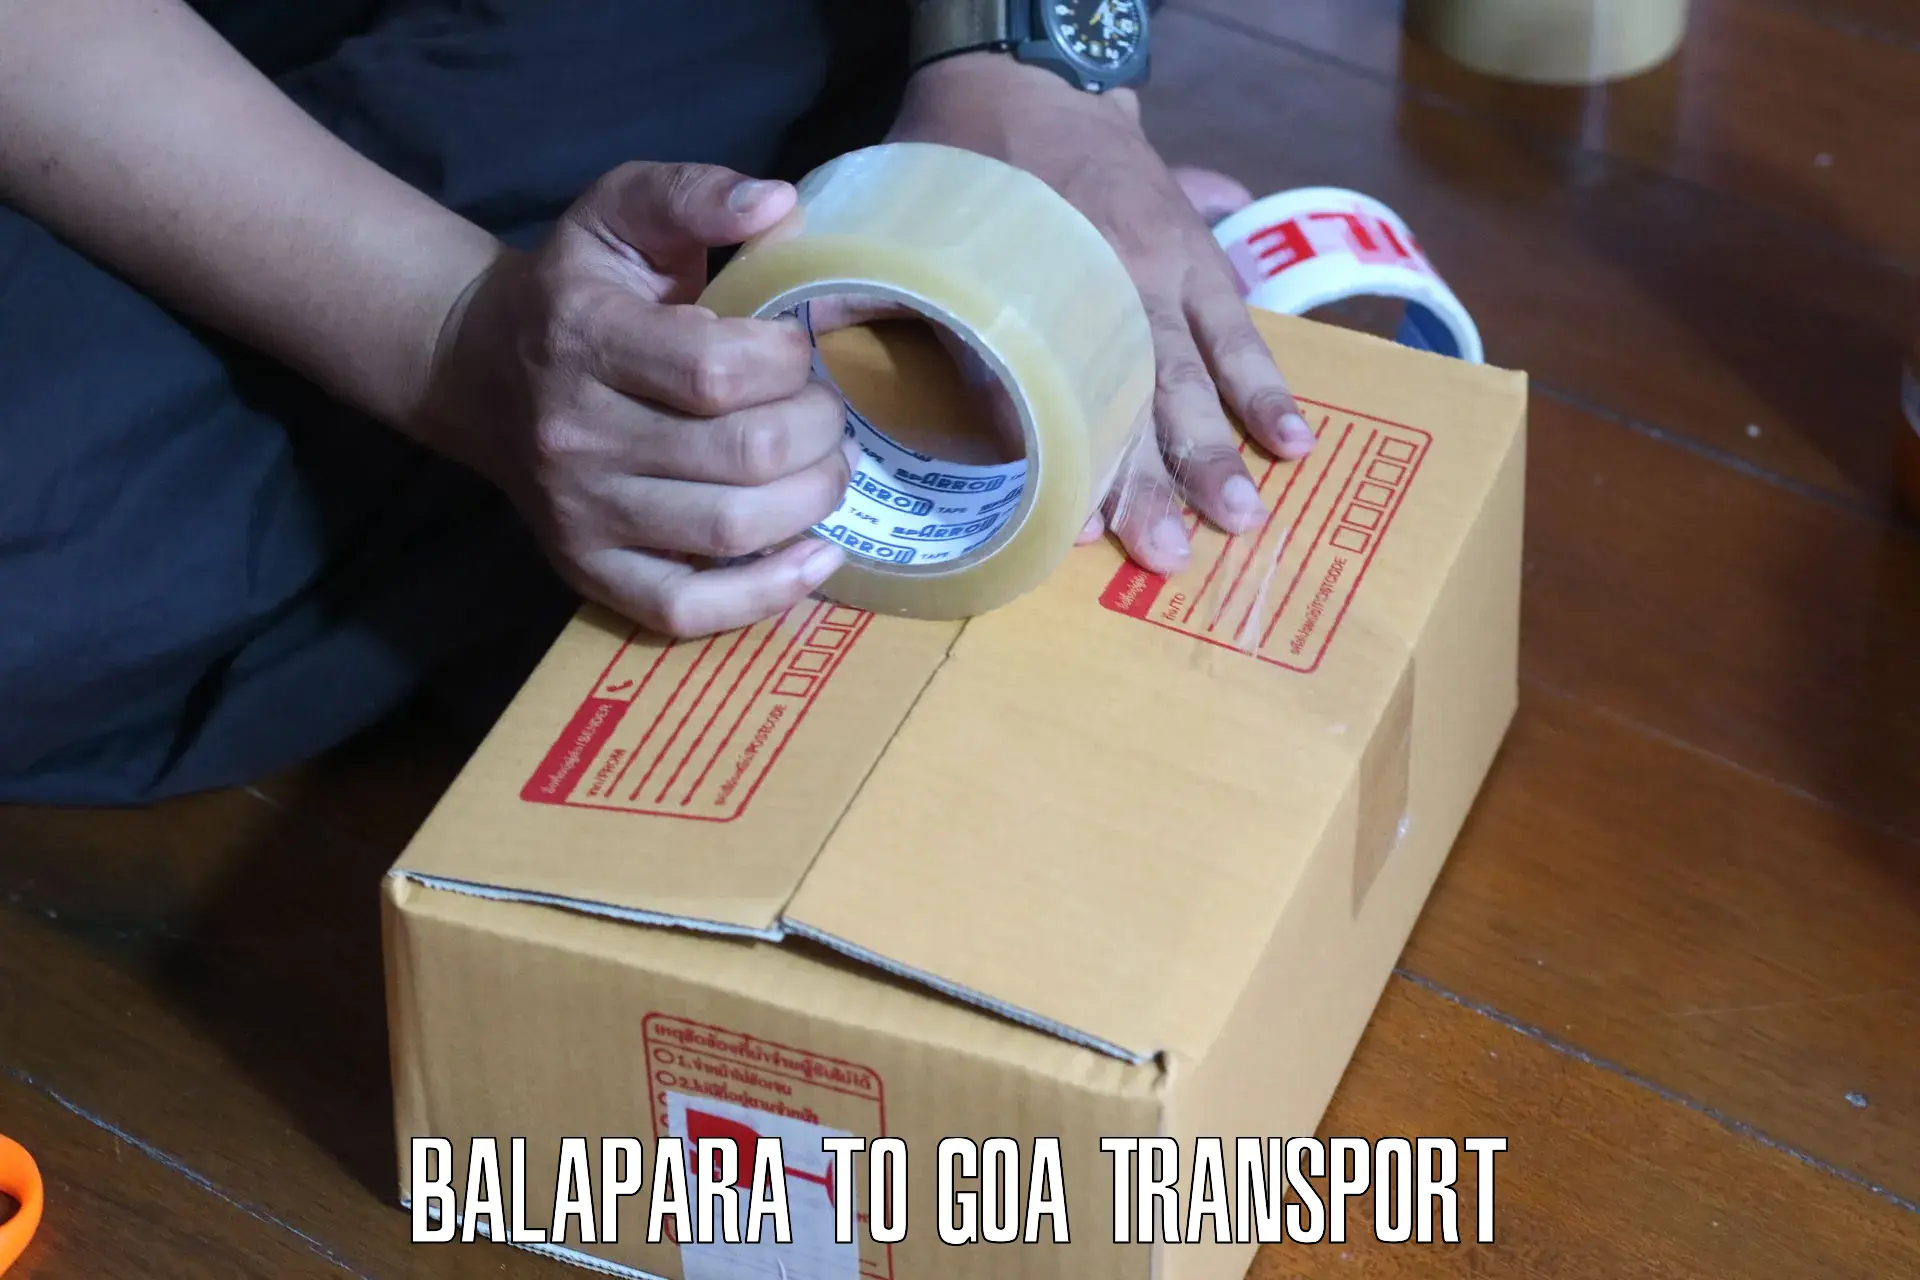 Shipping partner in Balapara to Canacona